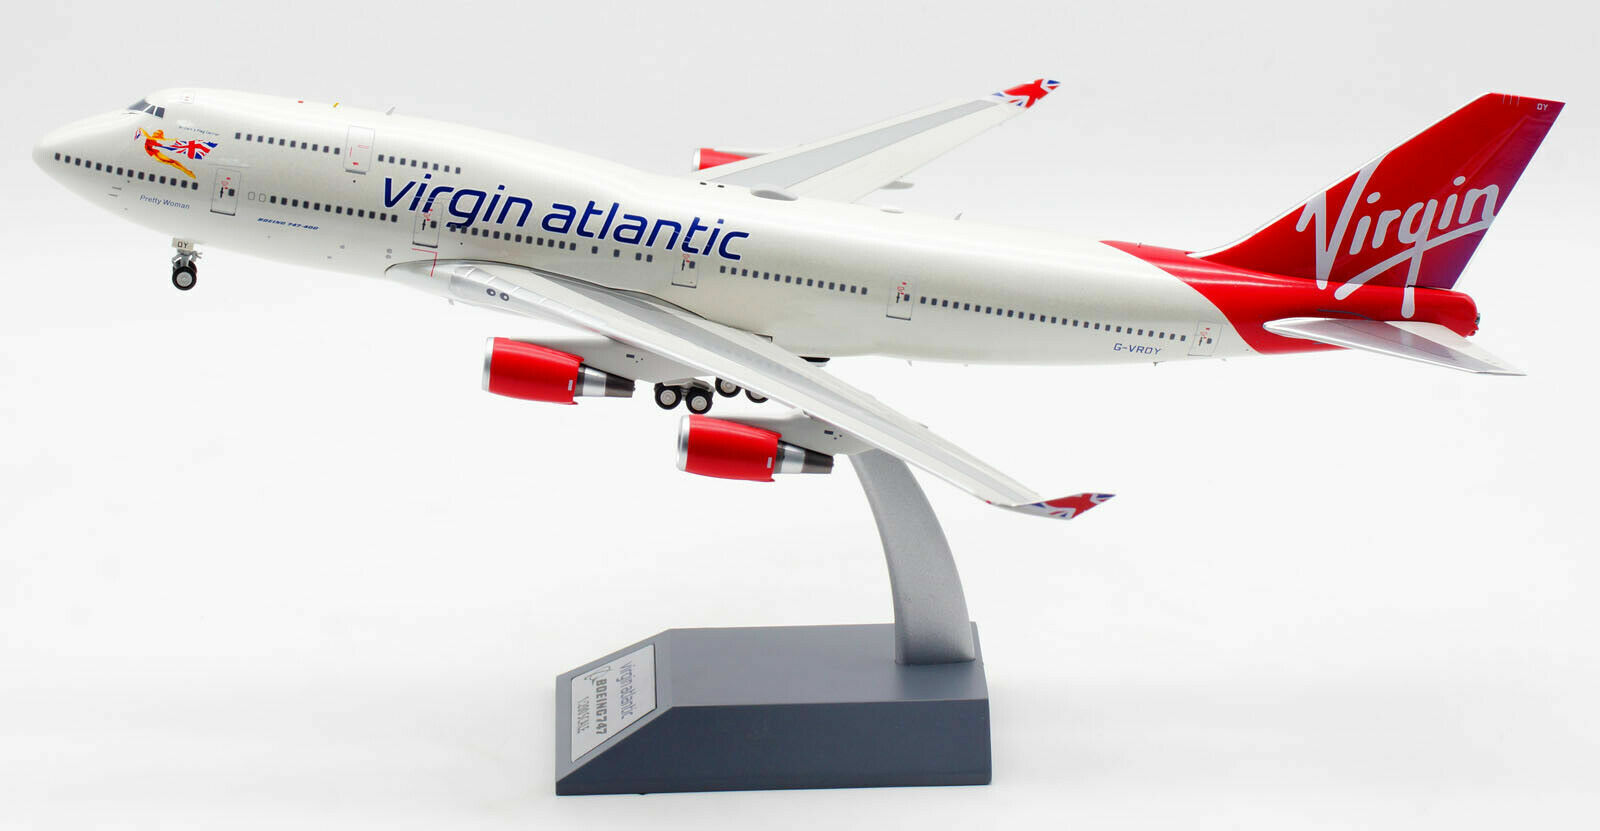 B-VR-744-OY Virgin Atlantic Airways Boeing 747-400 G-VROY Diecast 1/200 Model